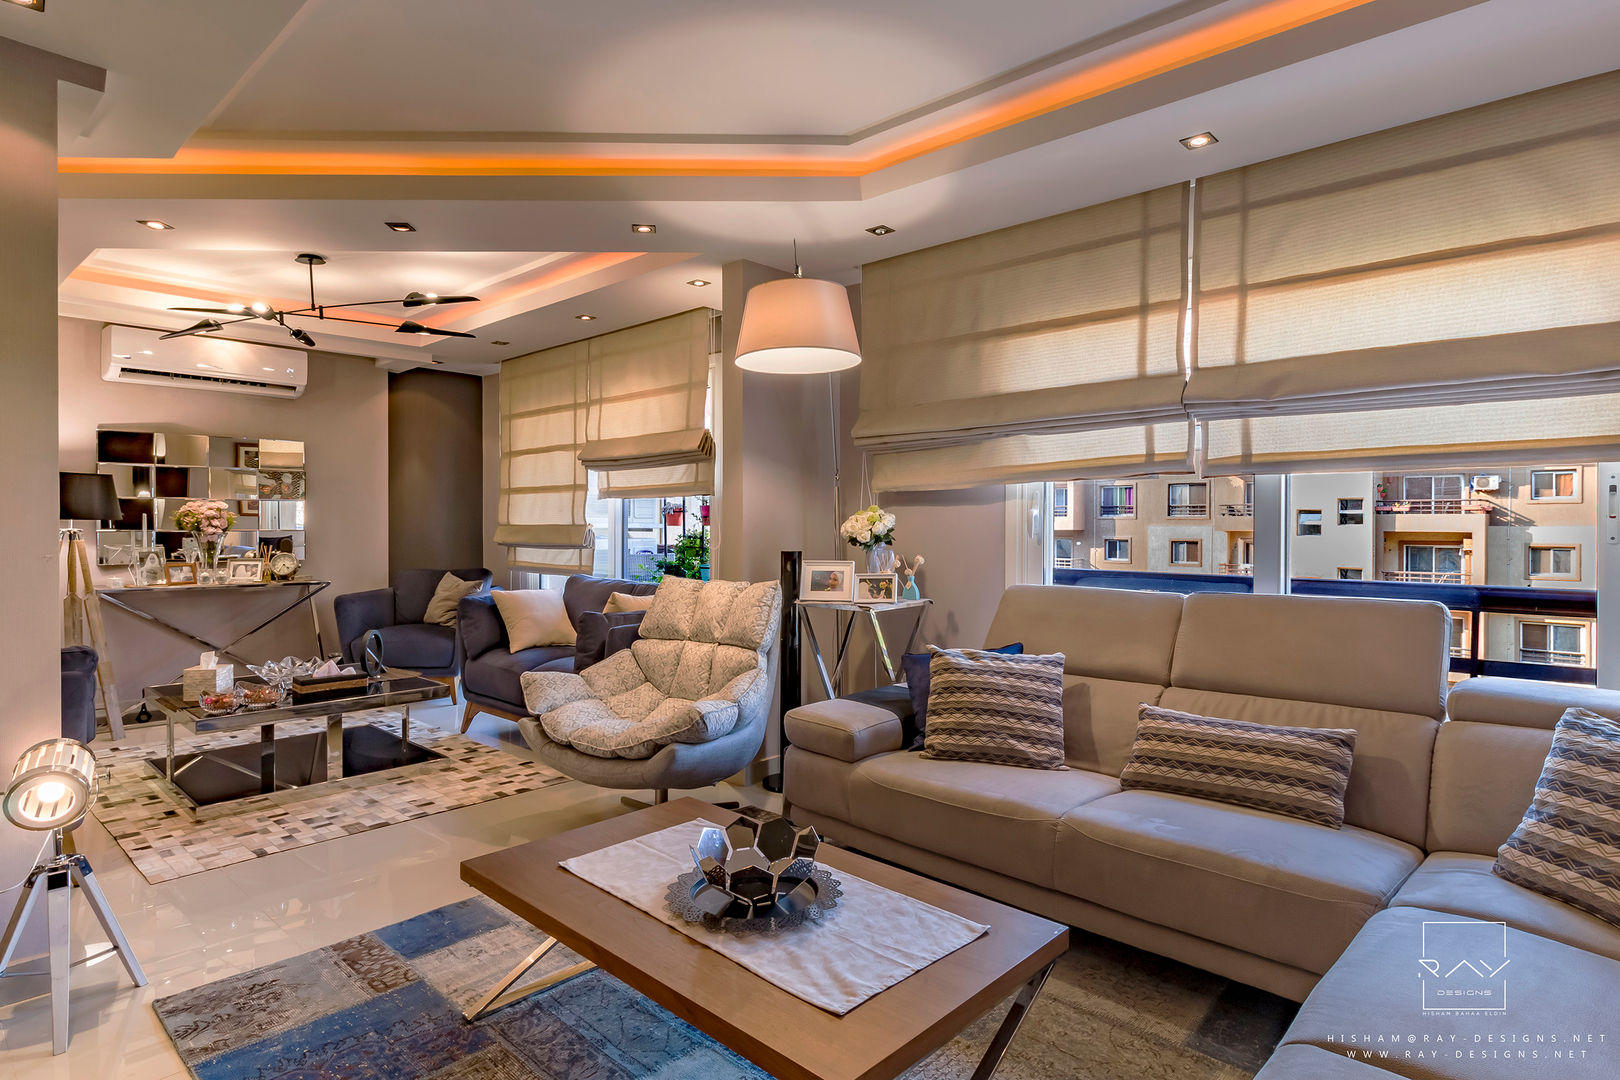 living room reception by raydesigns RayDesigns Ruang Keluarga Modern